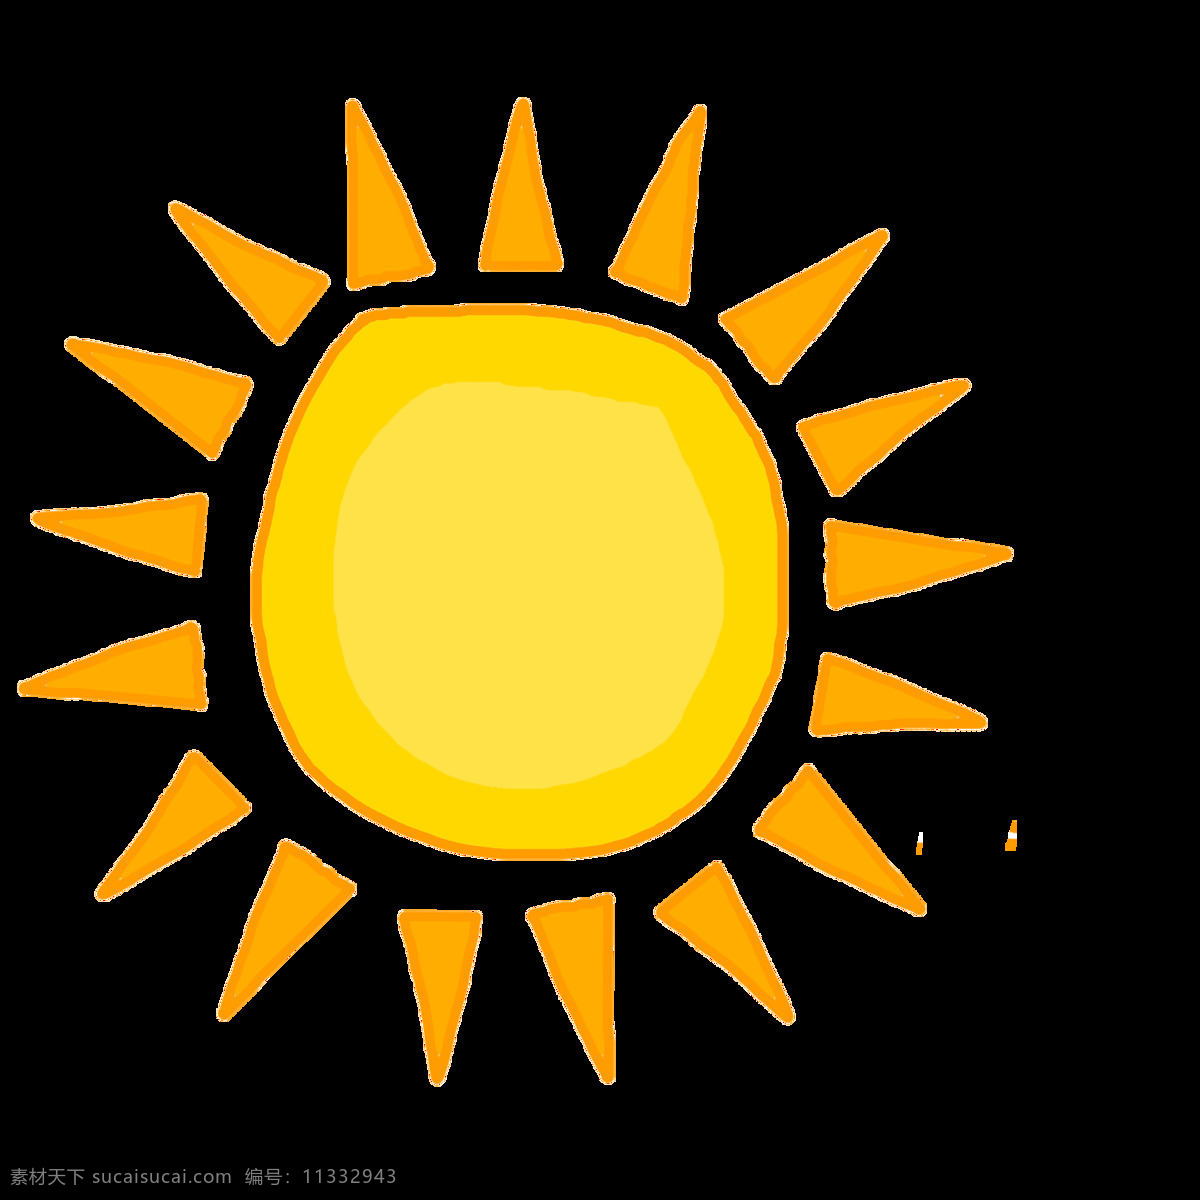 黄色 的卡 通 太阳 免 抠 透明 太阳真实图片 太阳表情包 太阳升起图片 太阳图片素材 太阳公公图片 卡通阳光图片 黄色太阳 日头 日光图片 手绘太阳